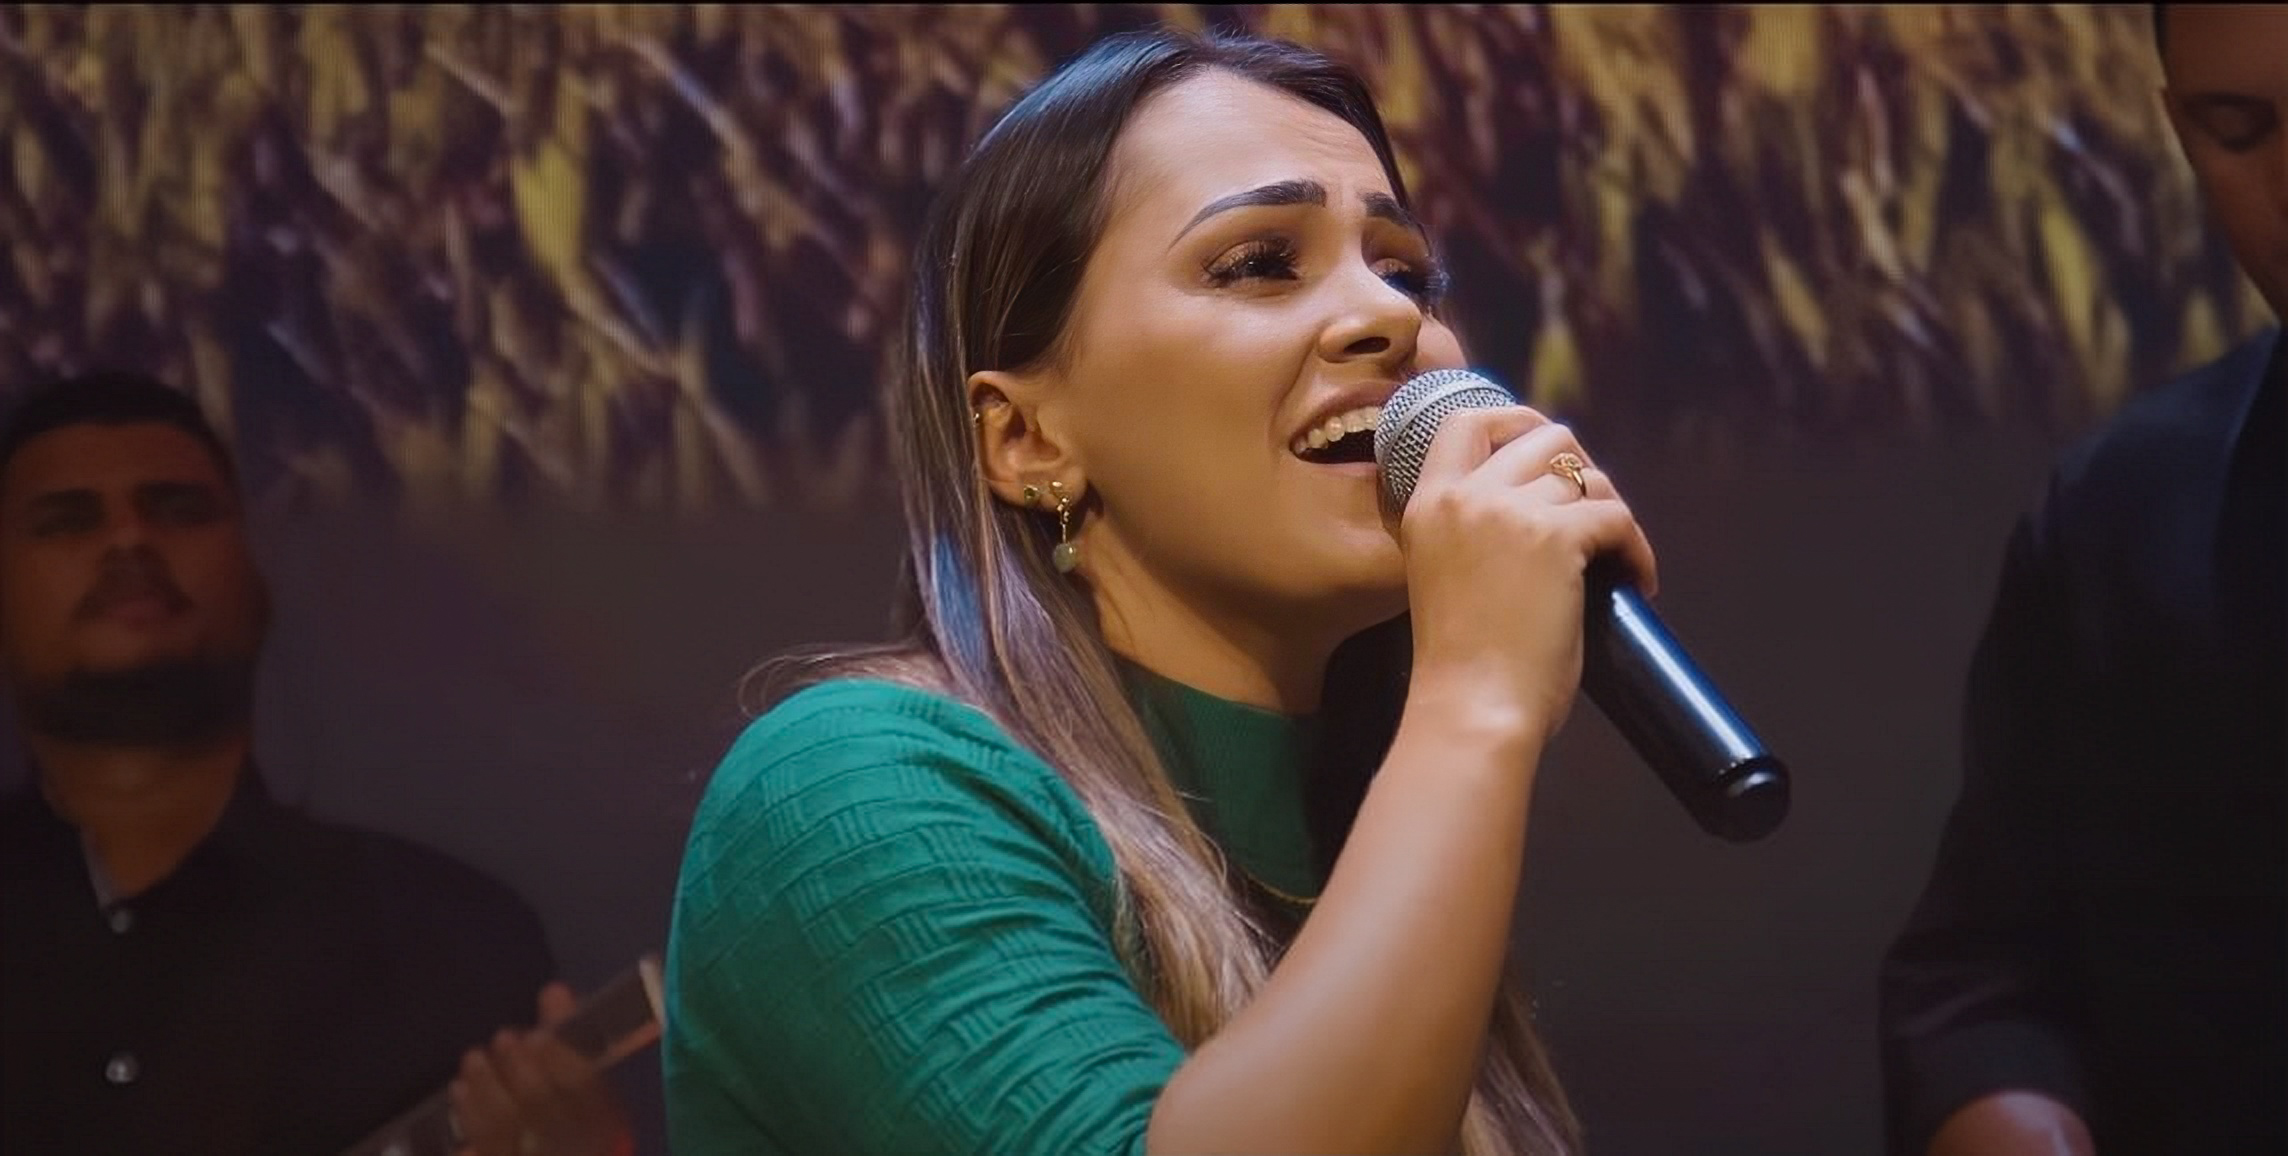 A cantora Jheniffer Melo lança a bela canção autoral “Teu Querer”